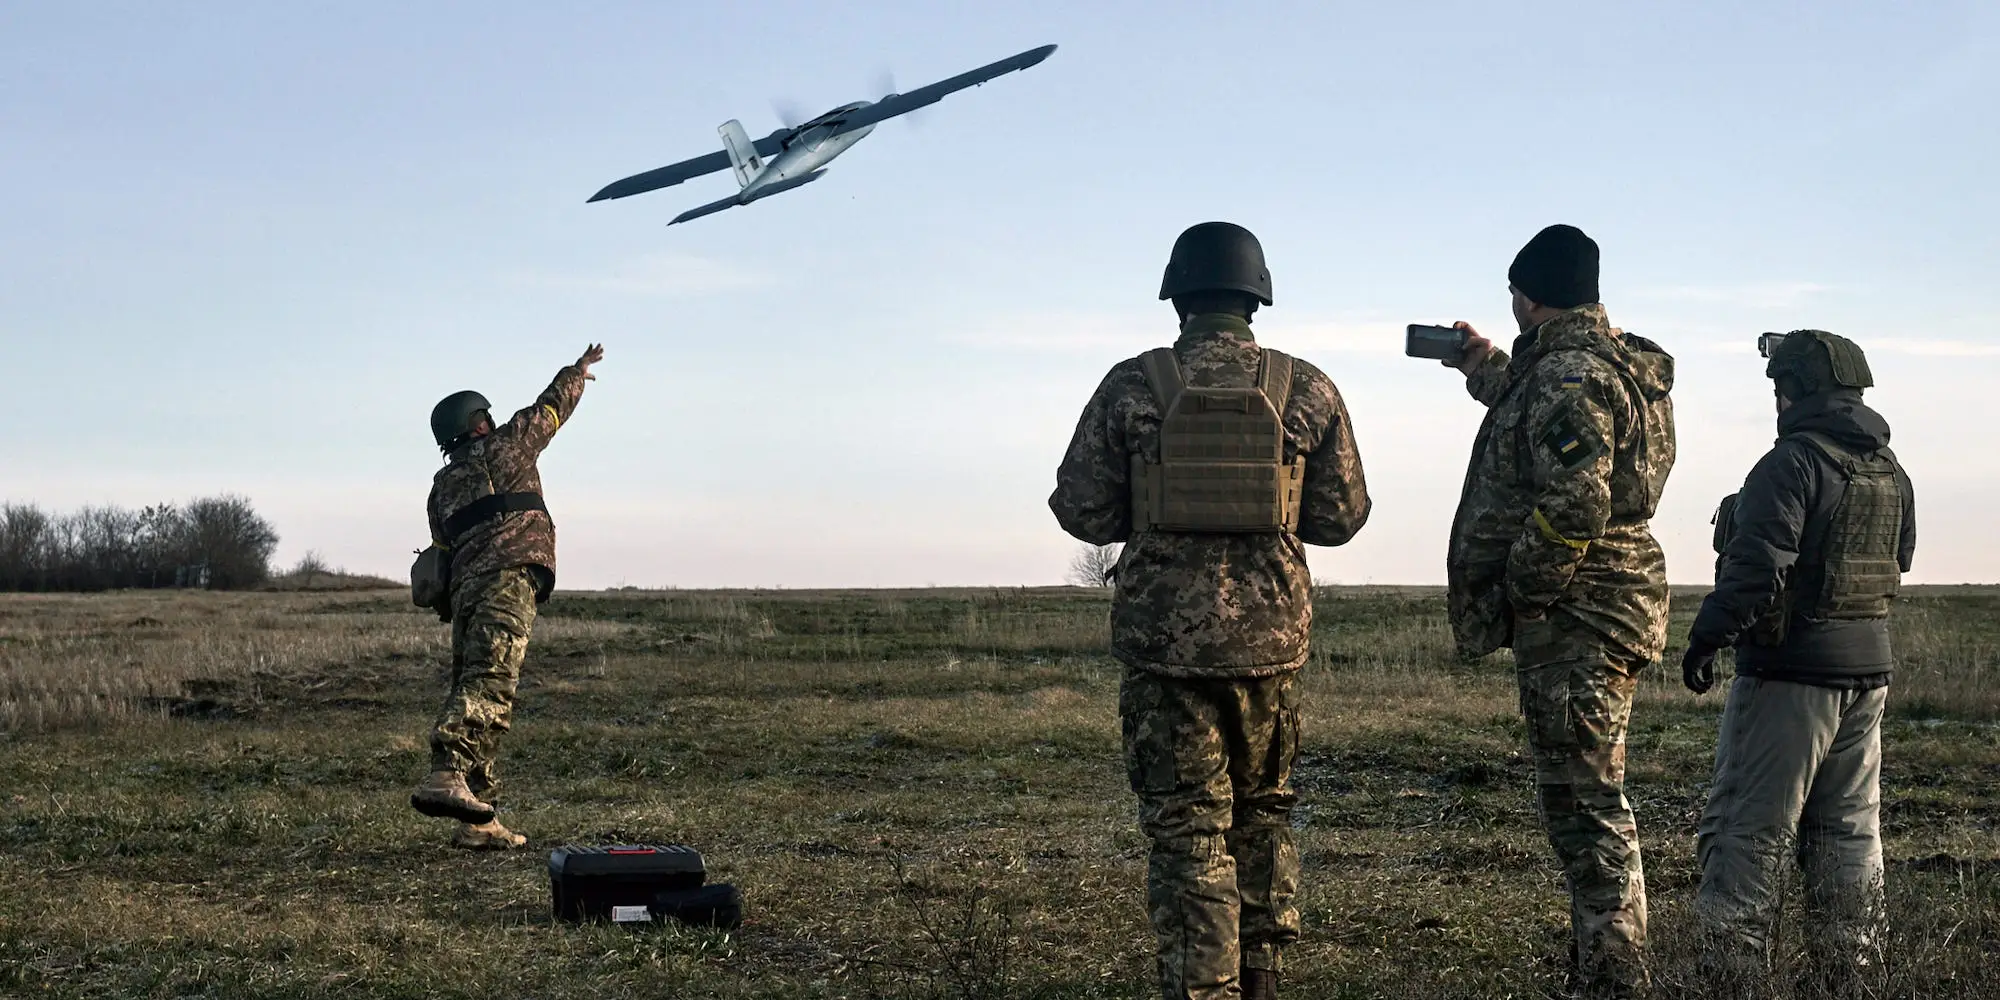 Δεν θα πιστέψετε πόσα drone χάνει κάθε μήνα η Ουκρανία εξαιτίας του ρωσικού ηλεκτρονικού πολέμου